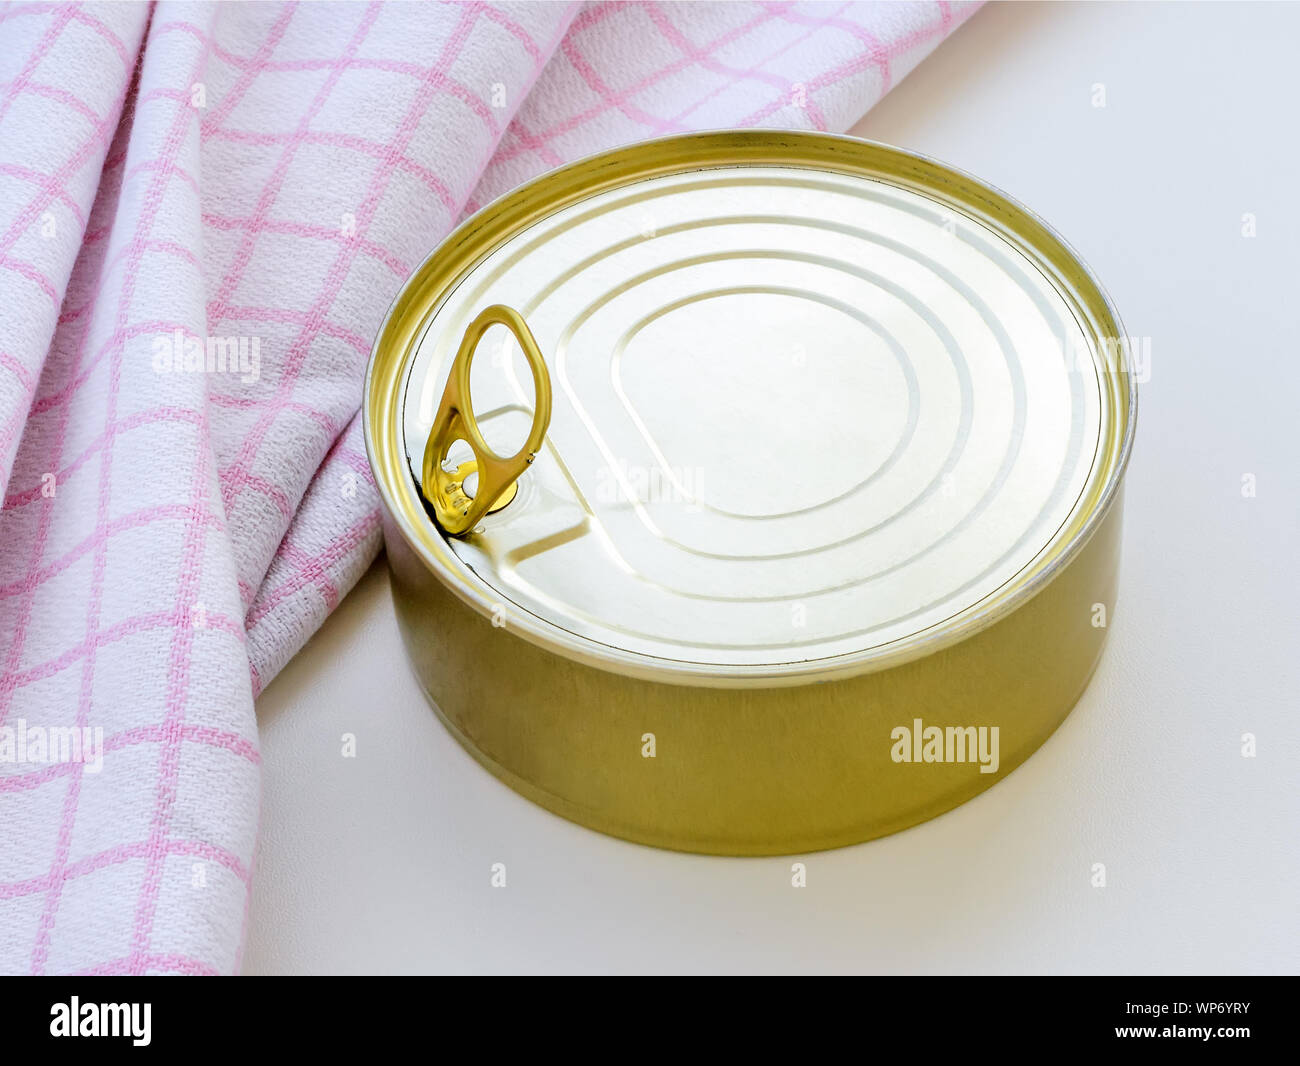 Gelber runder Blechdose in der Nähe von karierten Küchenhandtuch auf einem weißen Tisch. Öffnen einer Essen kann mit Lasche ziehen. Close-up. Stockfoto